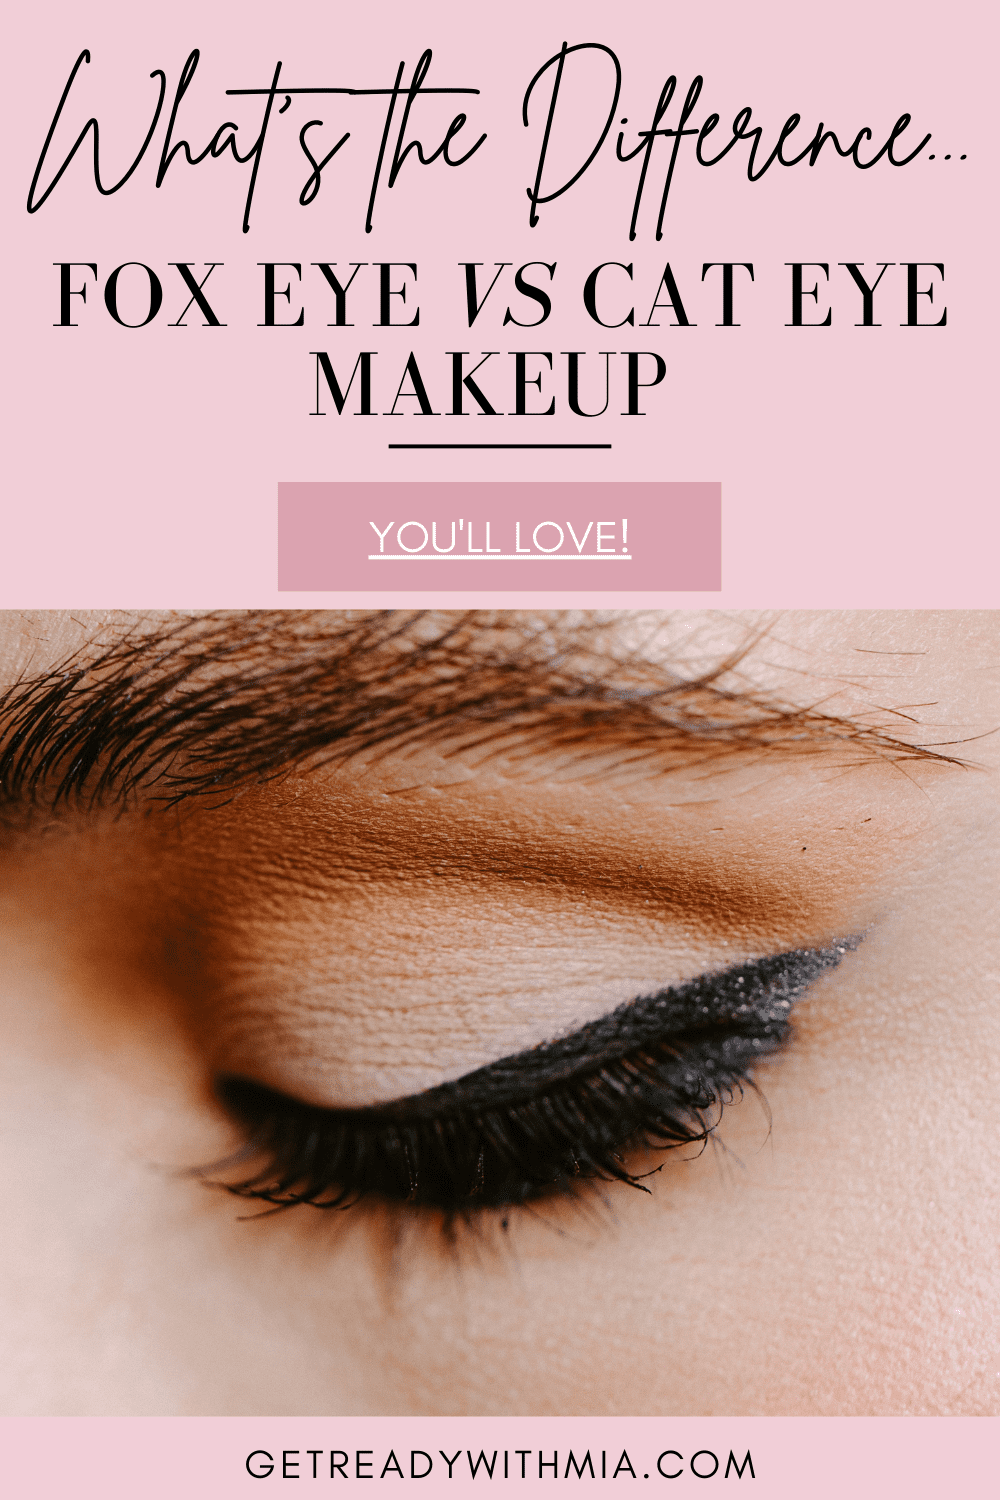 Fox eye makeup